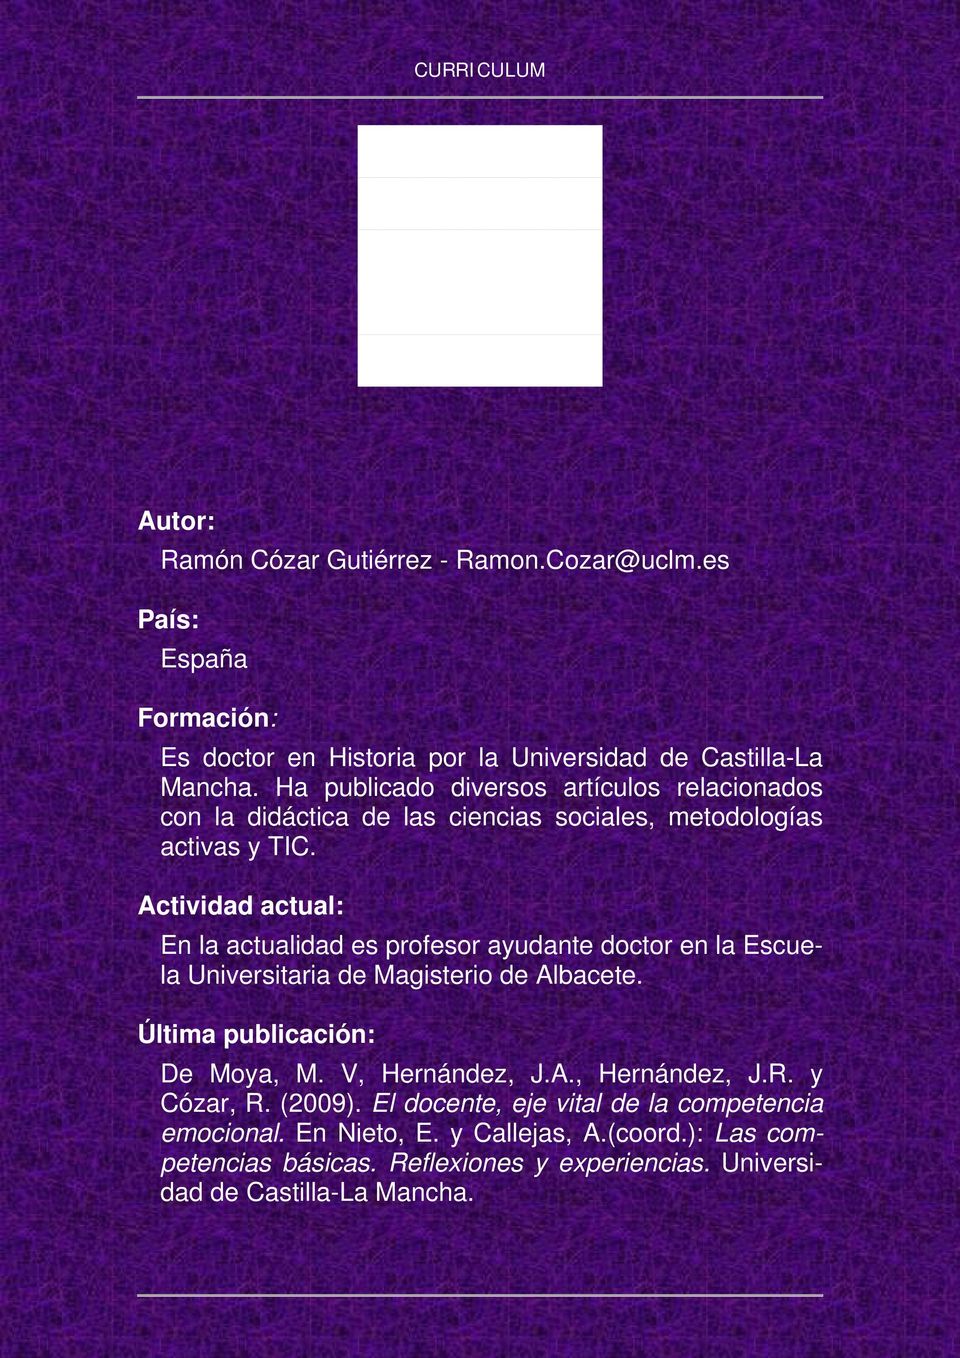 En la actualidad es profesor ayudante doctor en la Escuela Universitaria de Magisterio de Albacete. Última publicación: De Moya, M. V, Hernández, J.